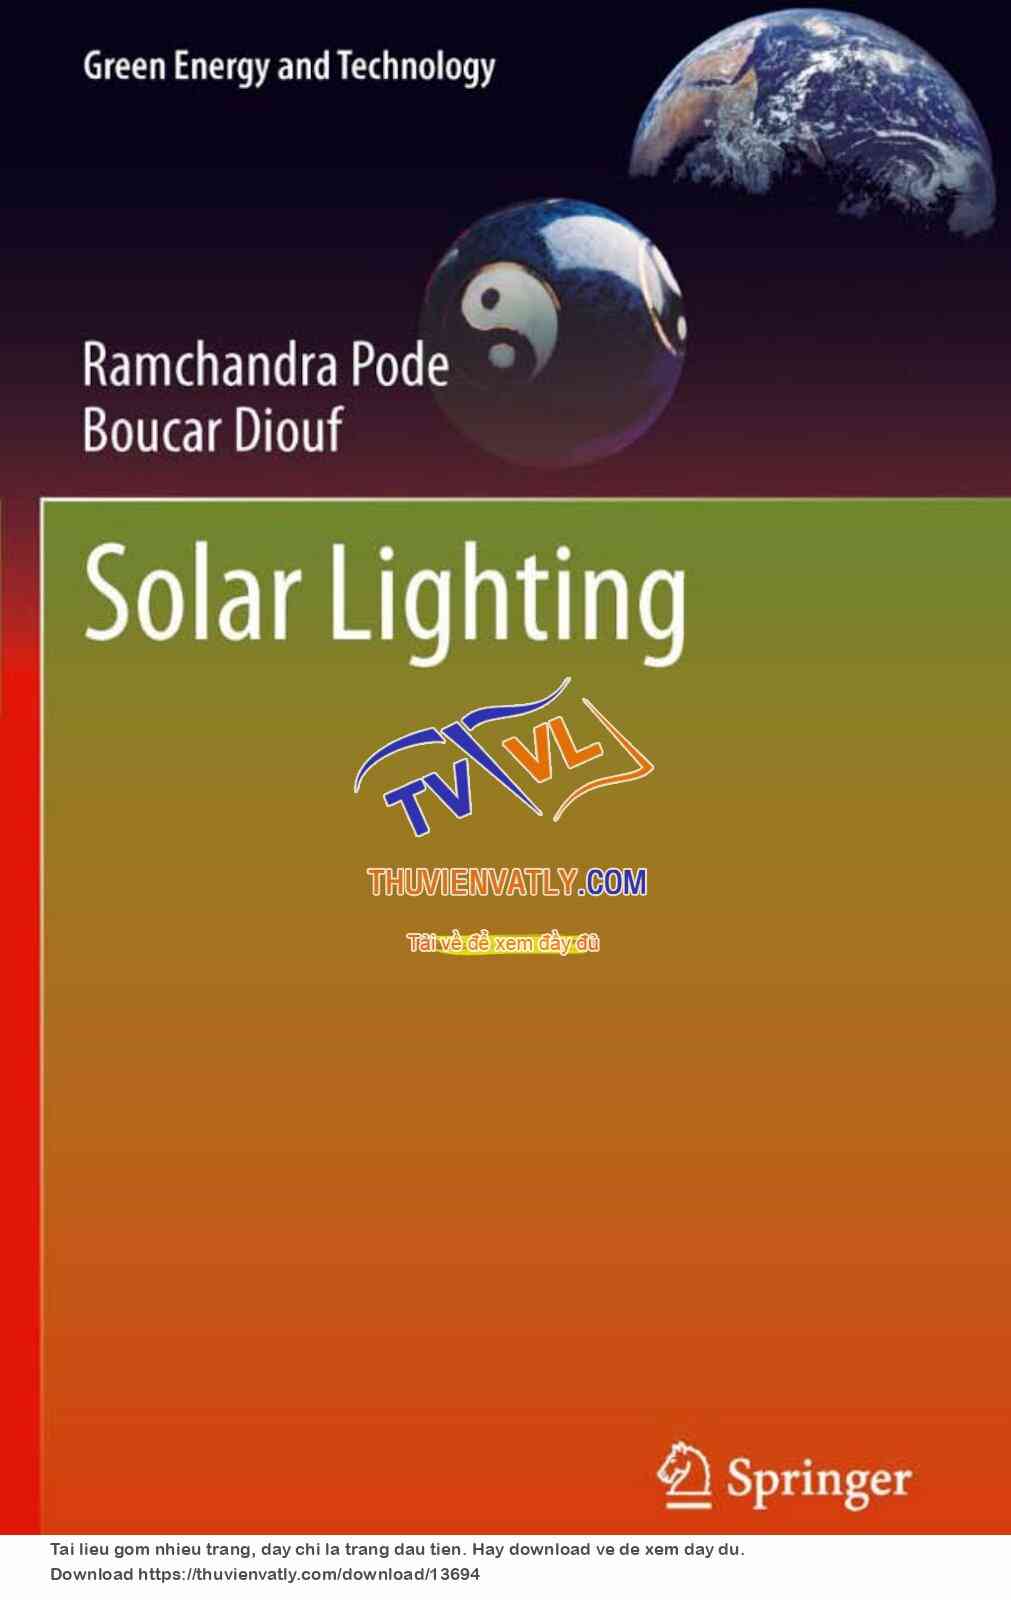 Solar Lighting - R. Pode, B. Douf (Springer, 2011)